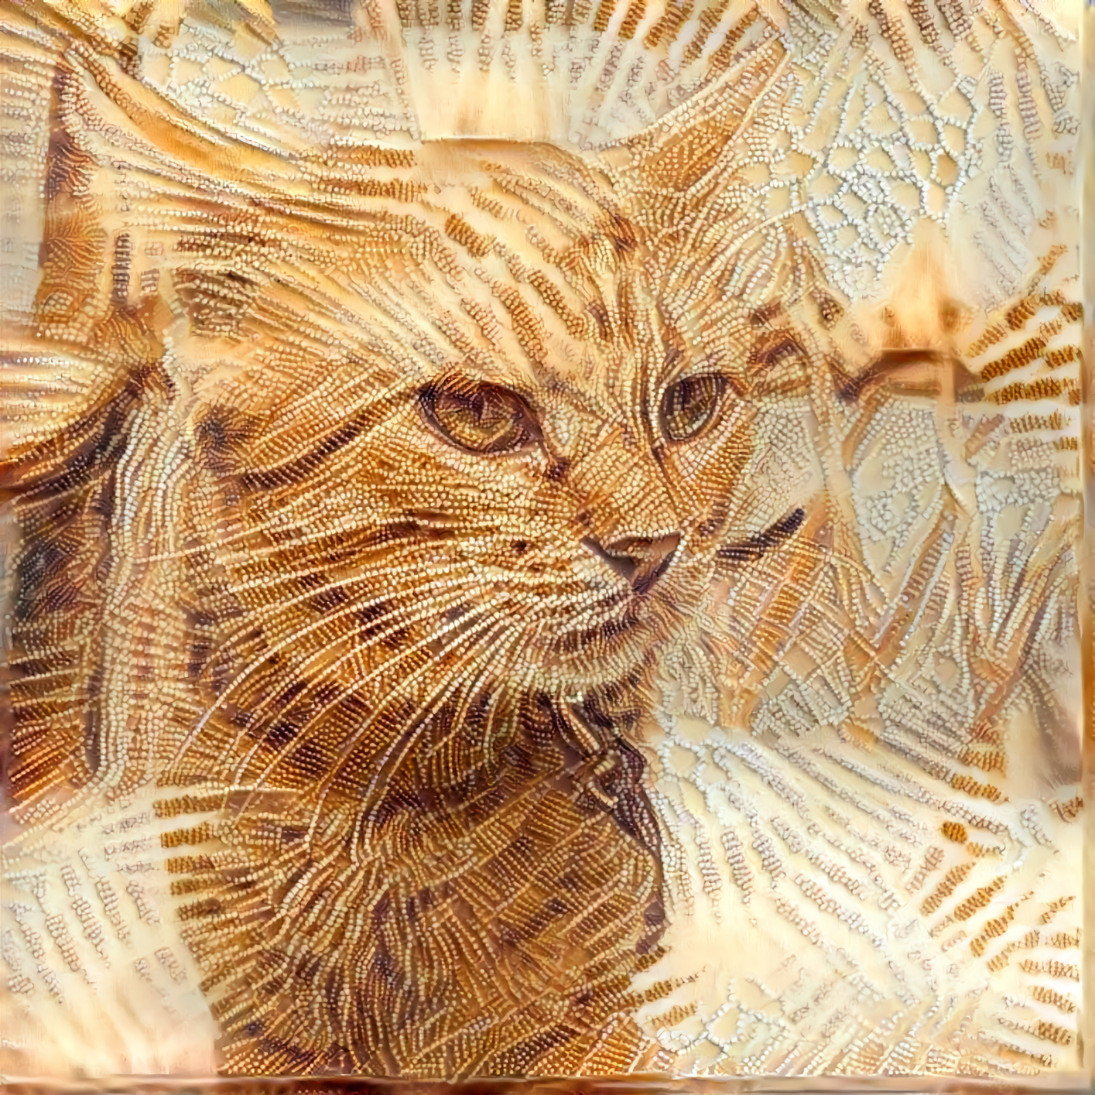 Beaded Tabby Cat [1.2MP]